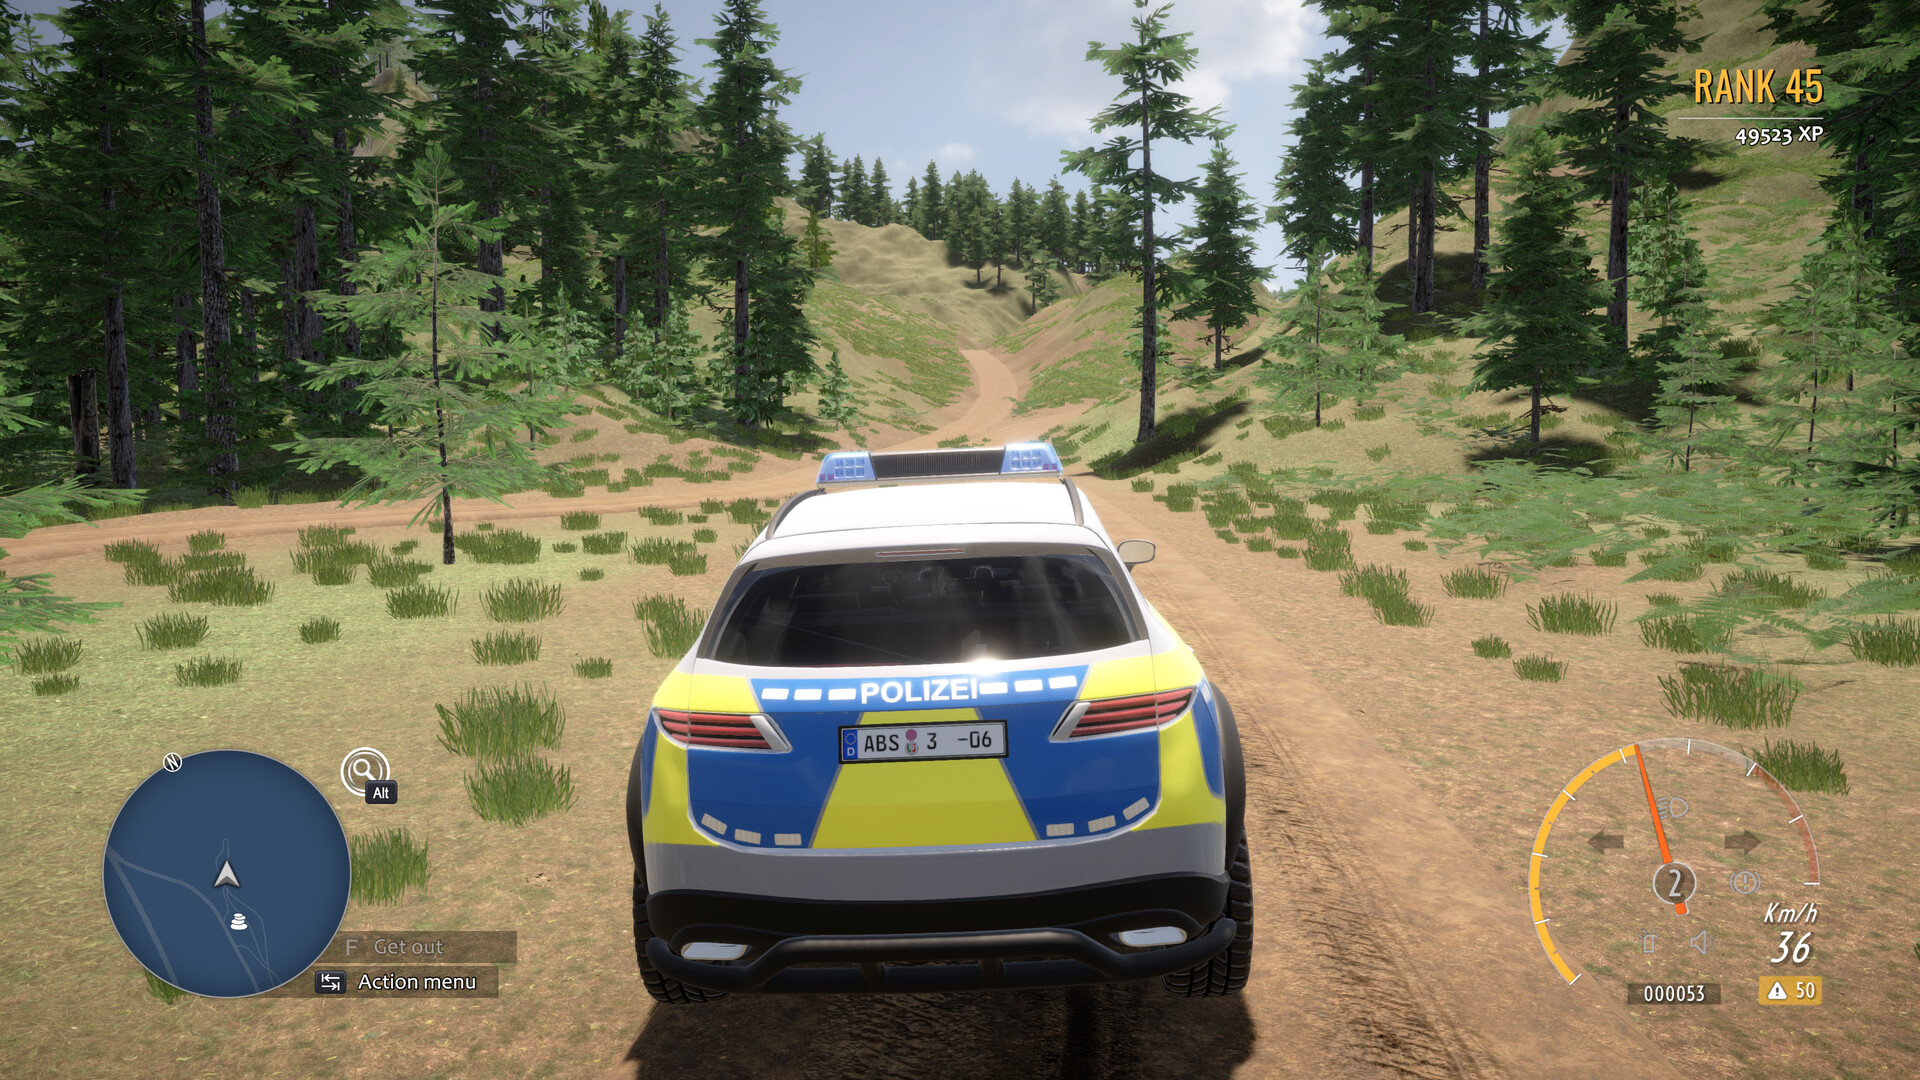 Autobahnpolizei Simulator 3: Off-Road DLC